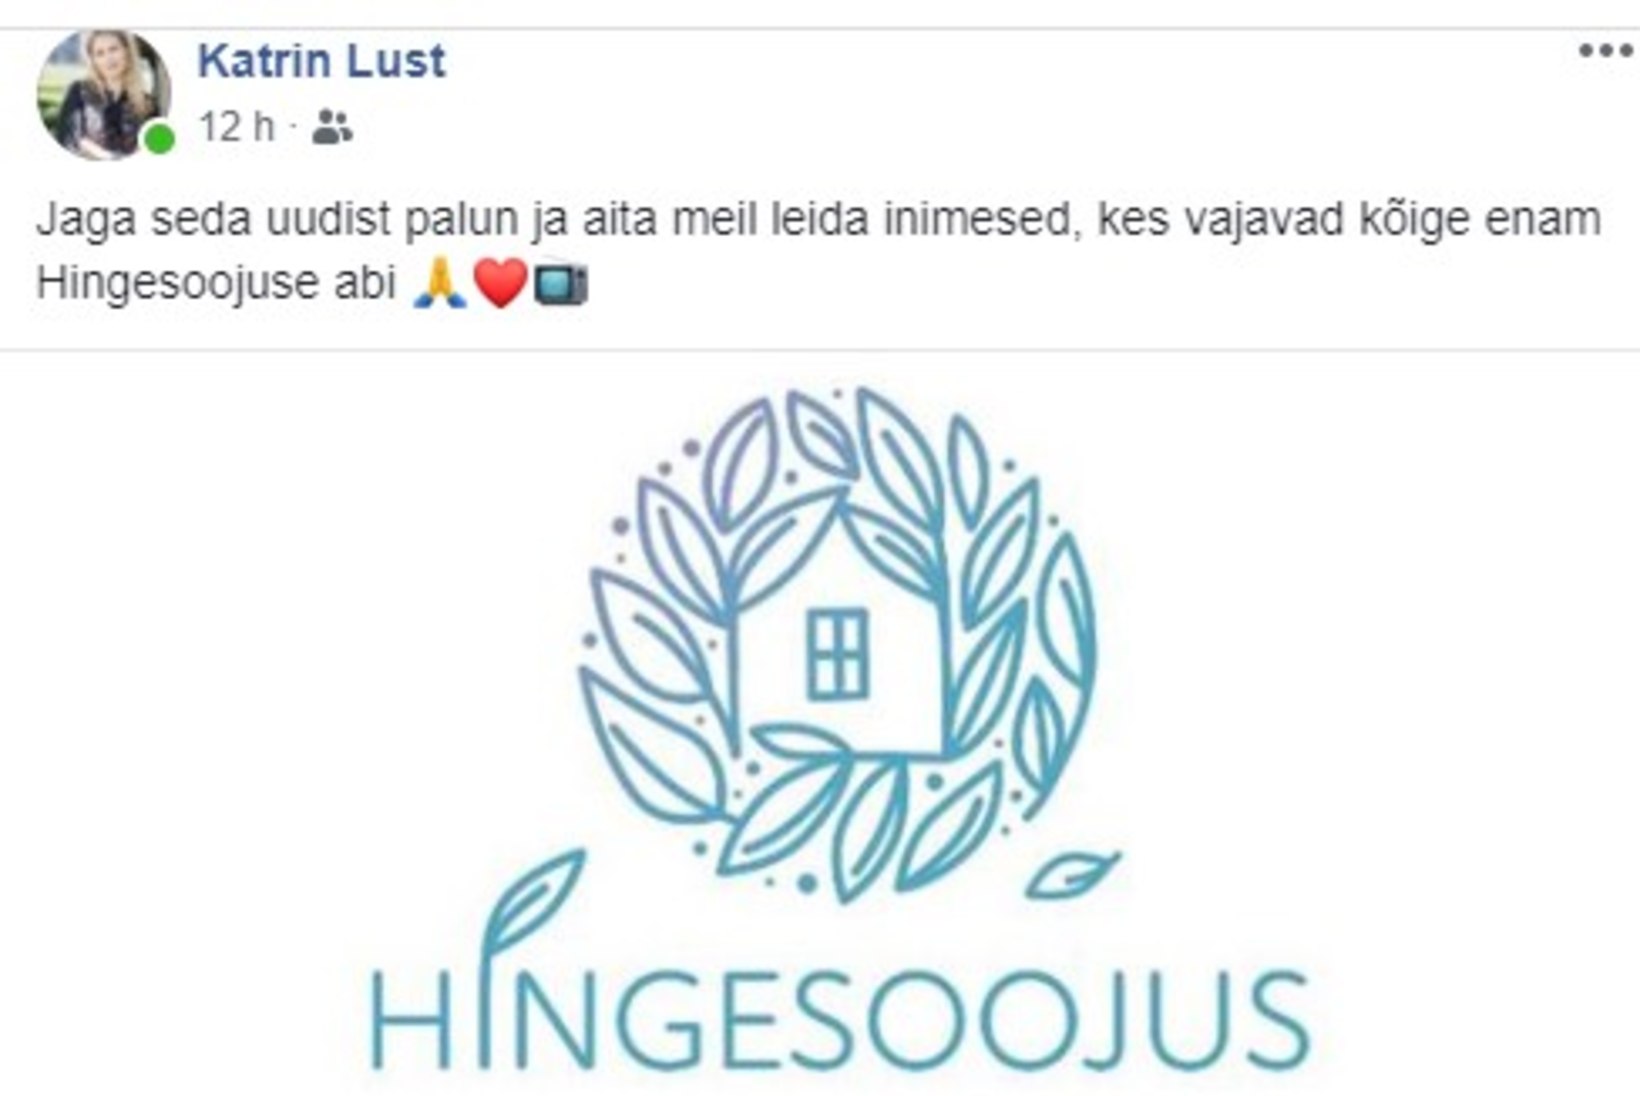 TELESAAGA JÄTKUB! Kristi Loigo siunab Katrin Lusti: saate ülevõtmine on nii tähtis, et tikutulega abivajajaid otsida – saaks asja vaid enda käpa alla?!